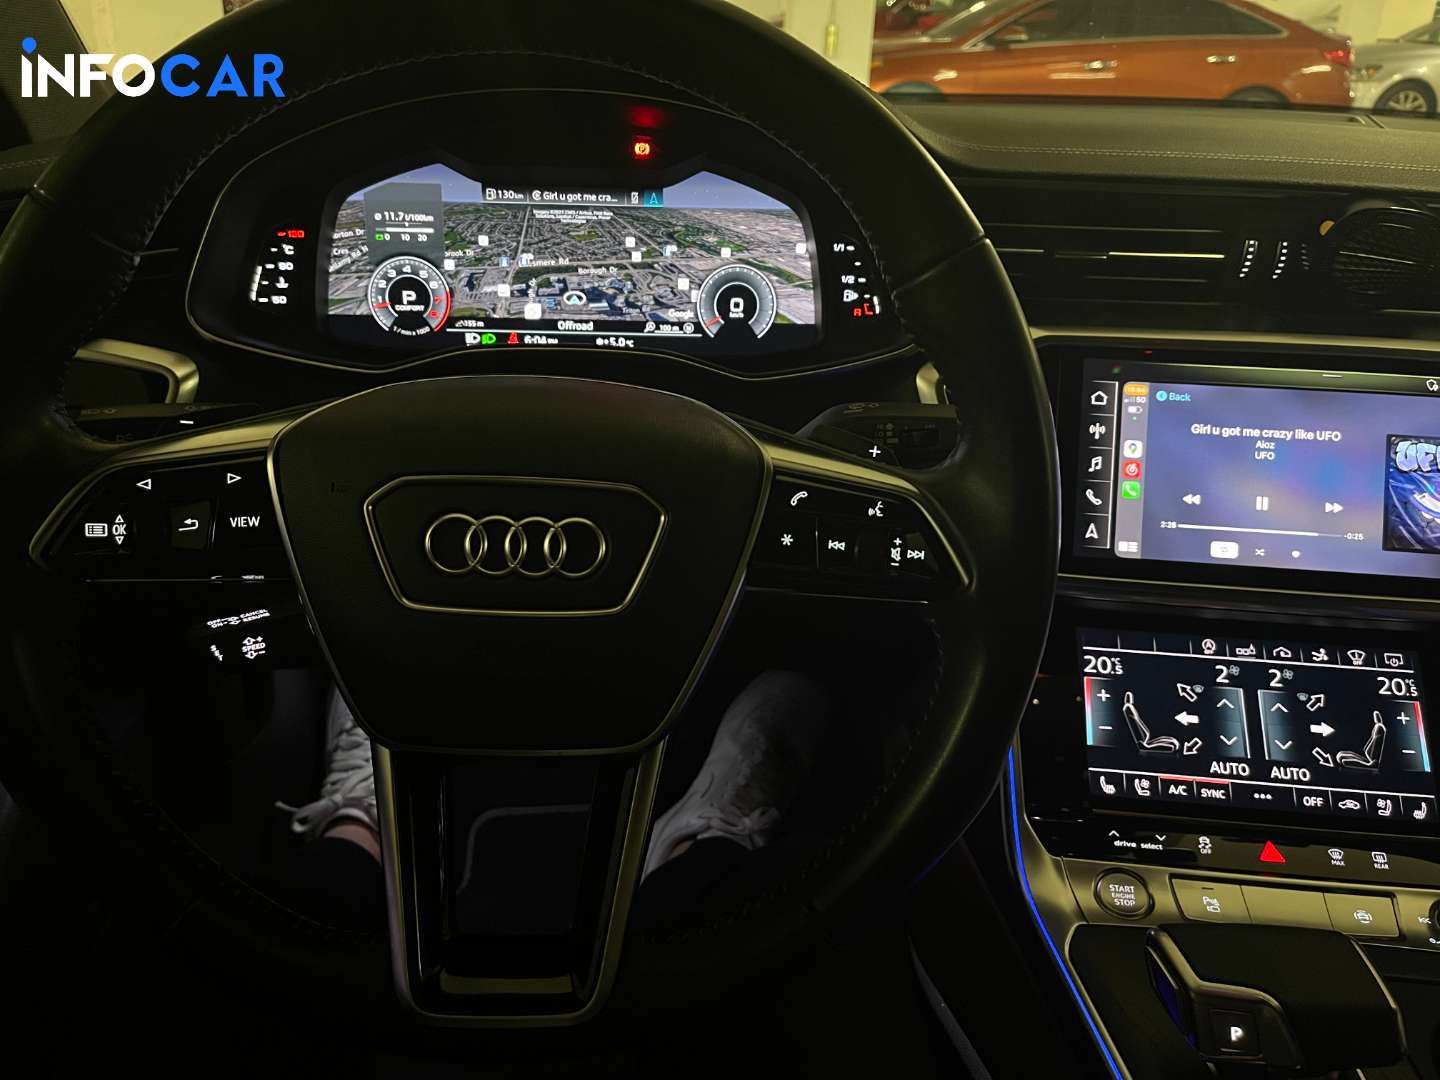 2019 Audi A7 technik+sline - INFOCAR - Toronto Auto Trading Platform